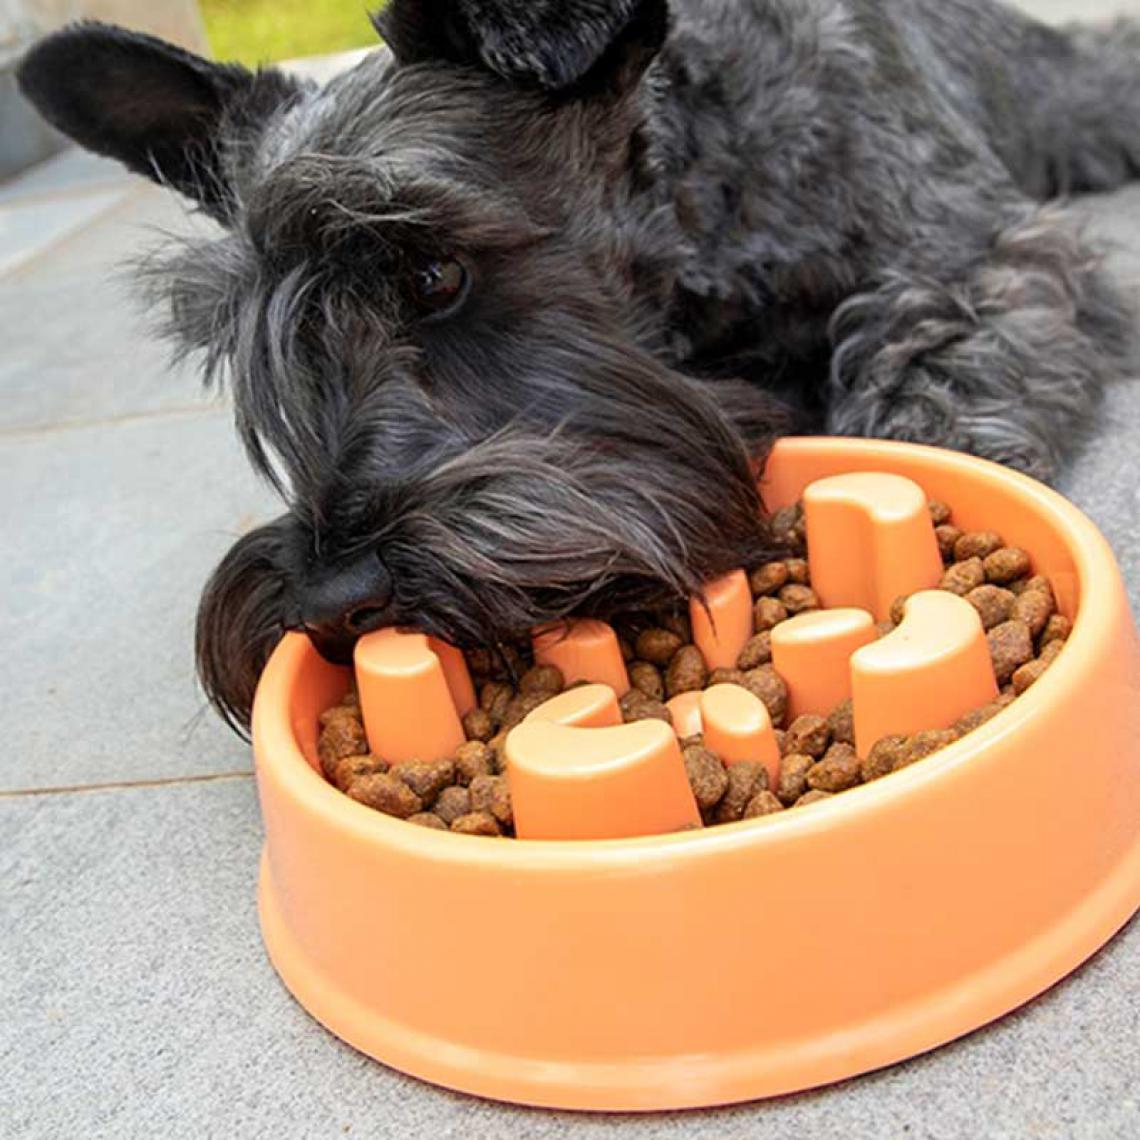 Shop Story - SHOP-STORY - SLOWFI : Gamelle d'Alimentation Anti-Glouton pour Chiens - Gamelle pour chien